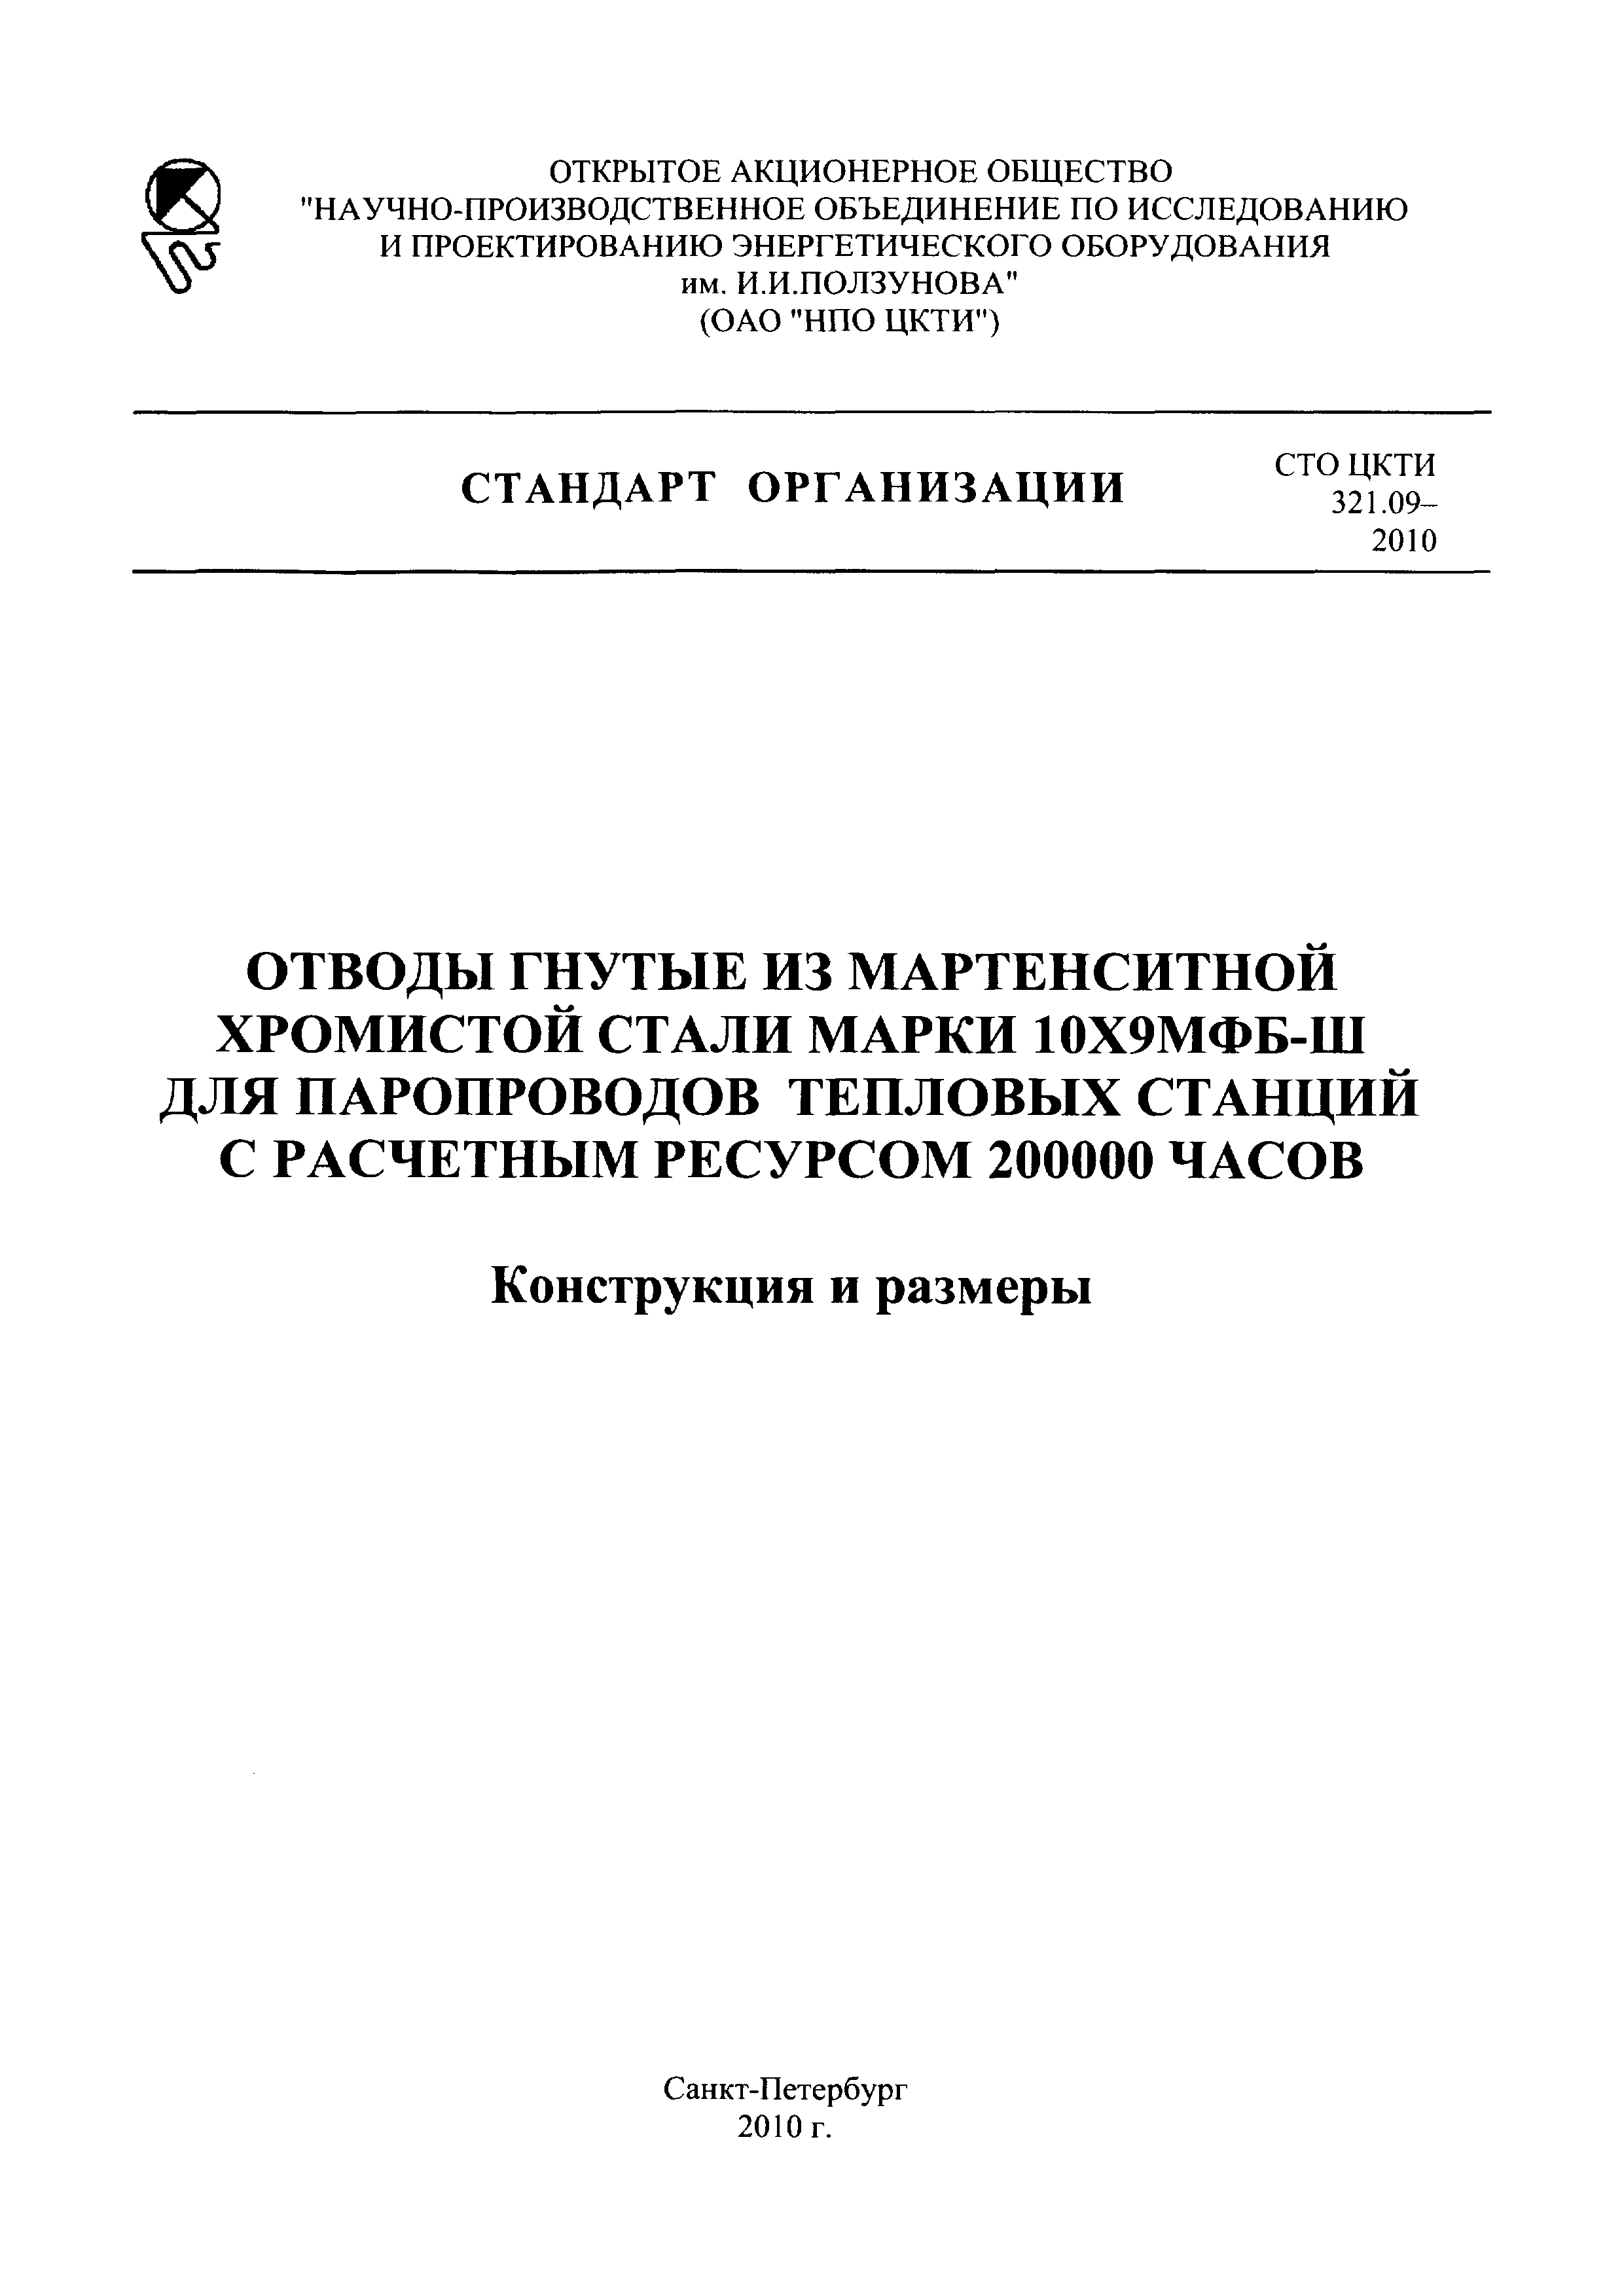 СТО ЦКТИ 321.09-2010